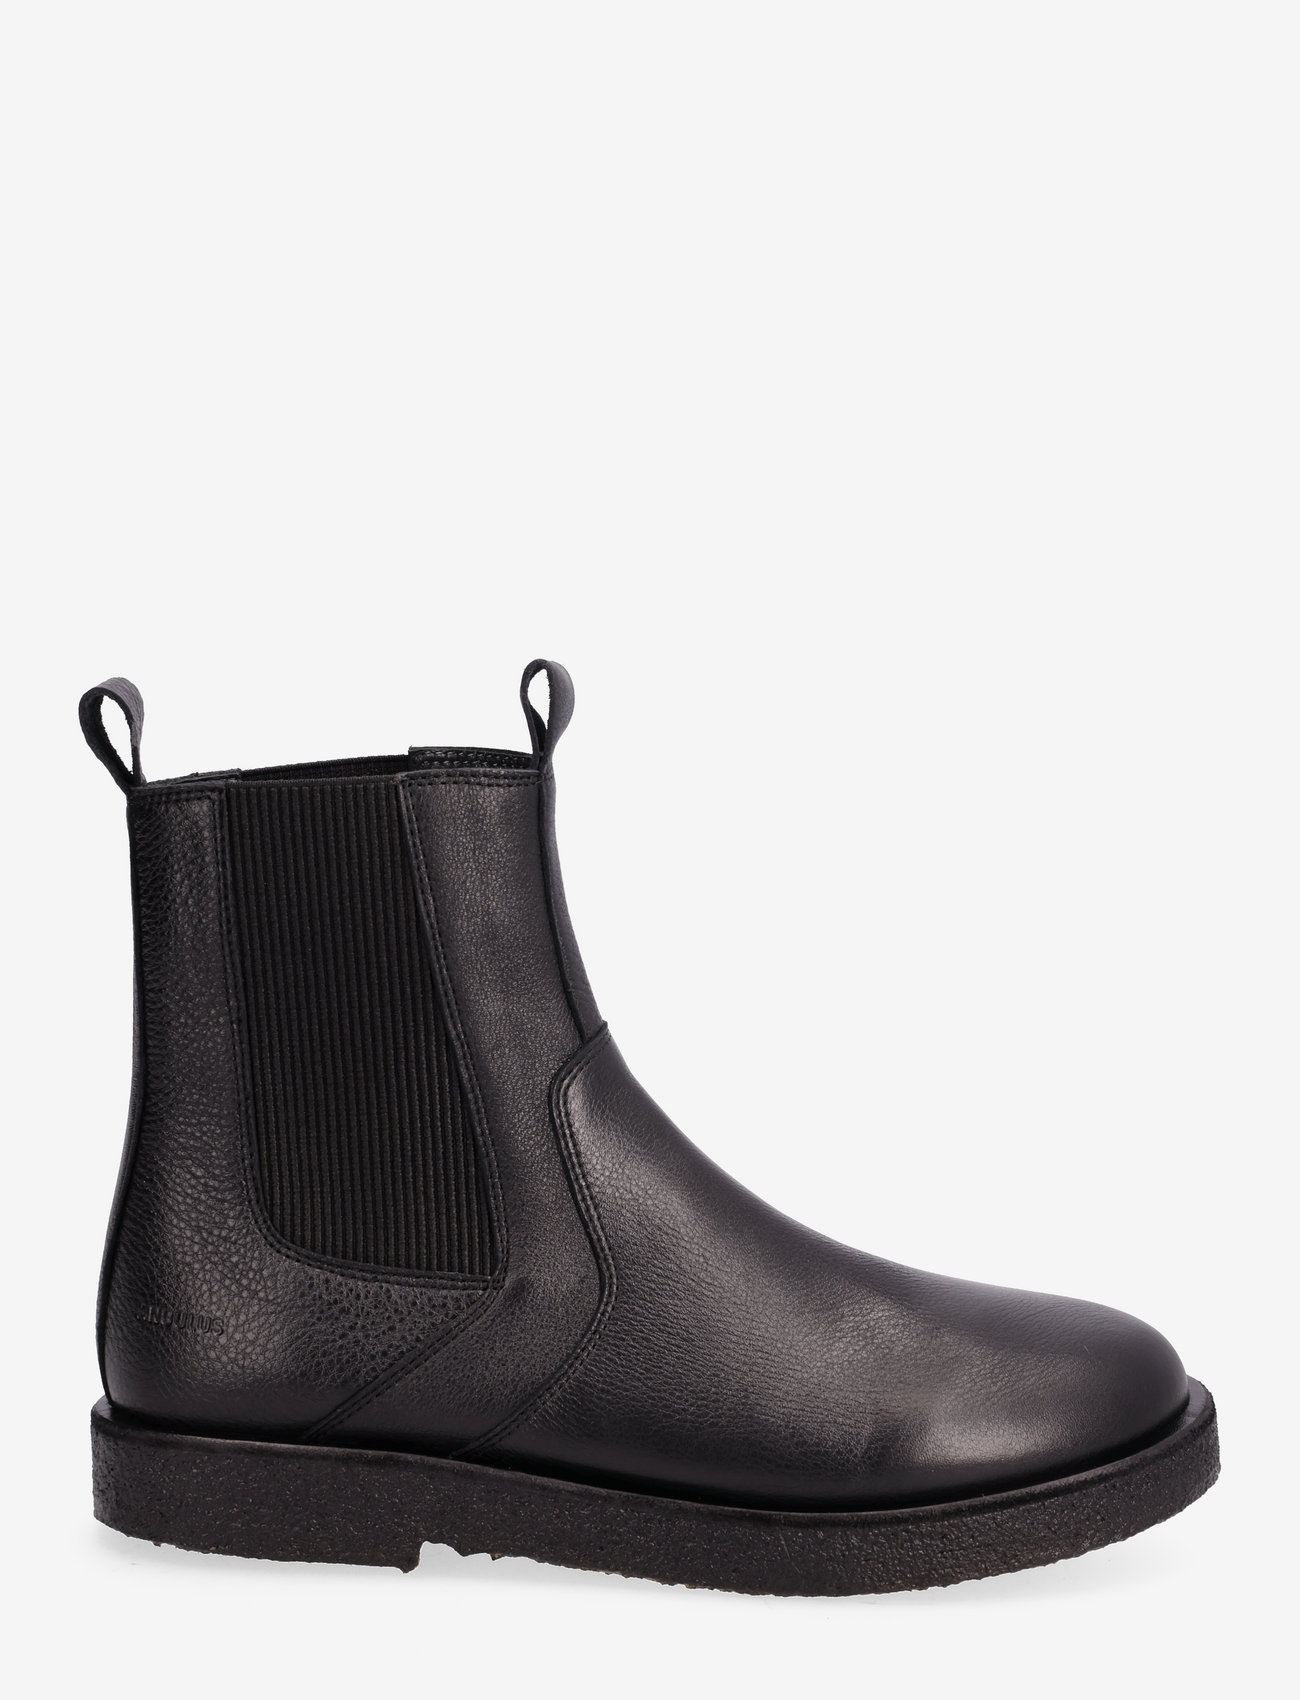 ANGULUS - Boots - flat - chelsea-saapad - 1933/019 black/black - 1